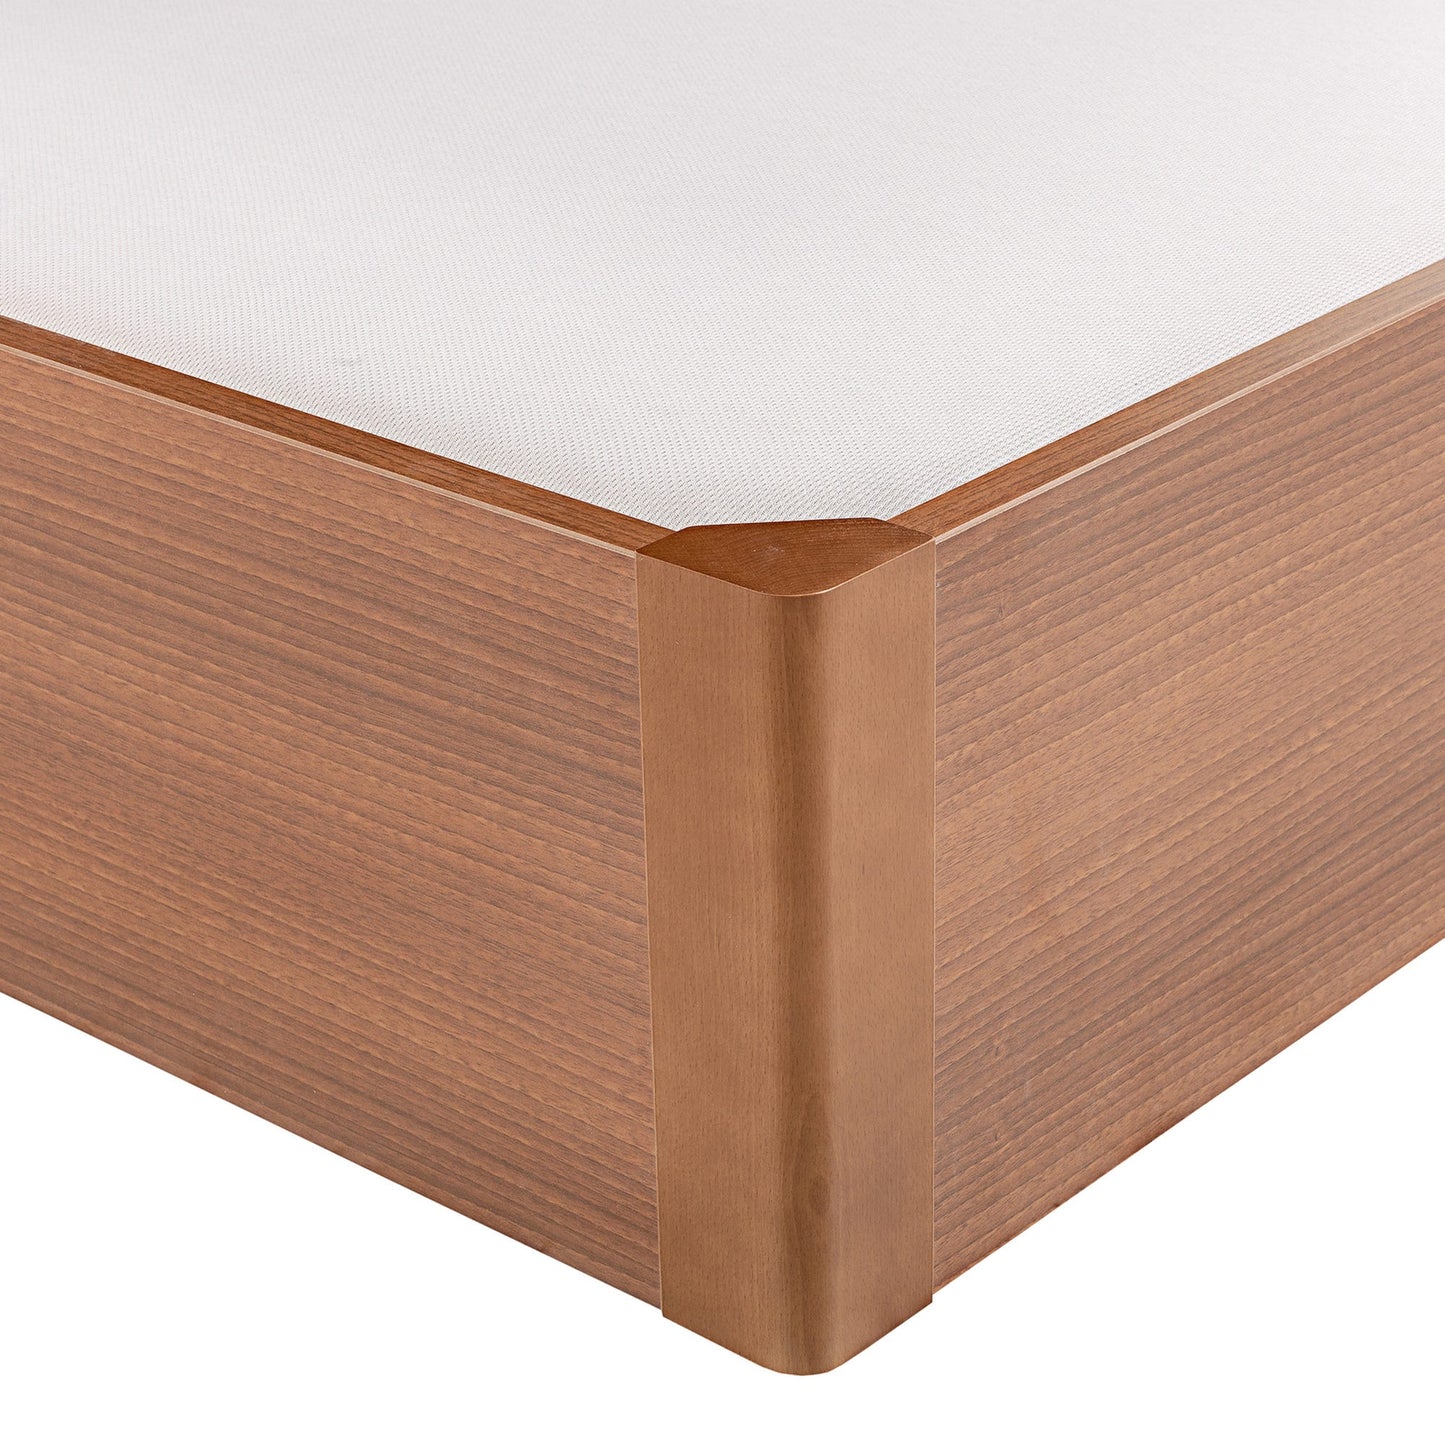 Canapé abatible de madera tapa única de color cerezo - DESIGN - 80x200